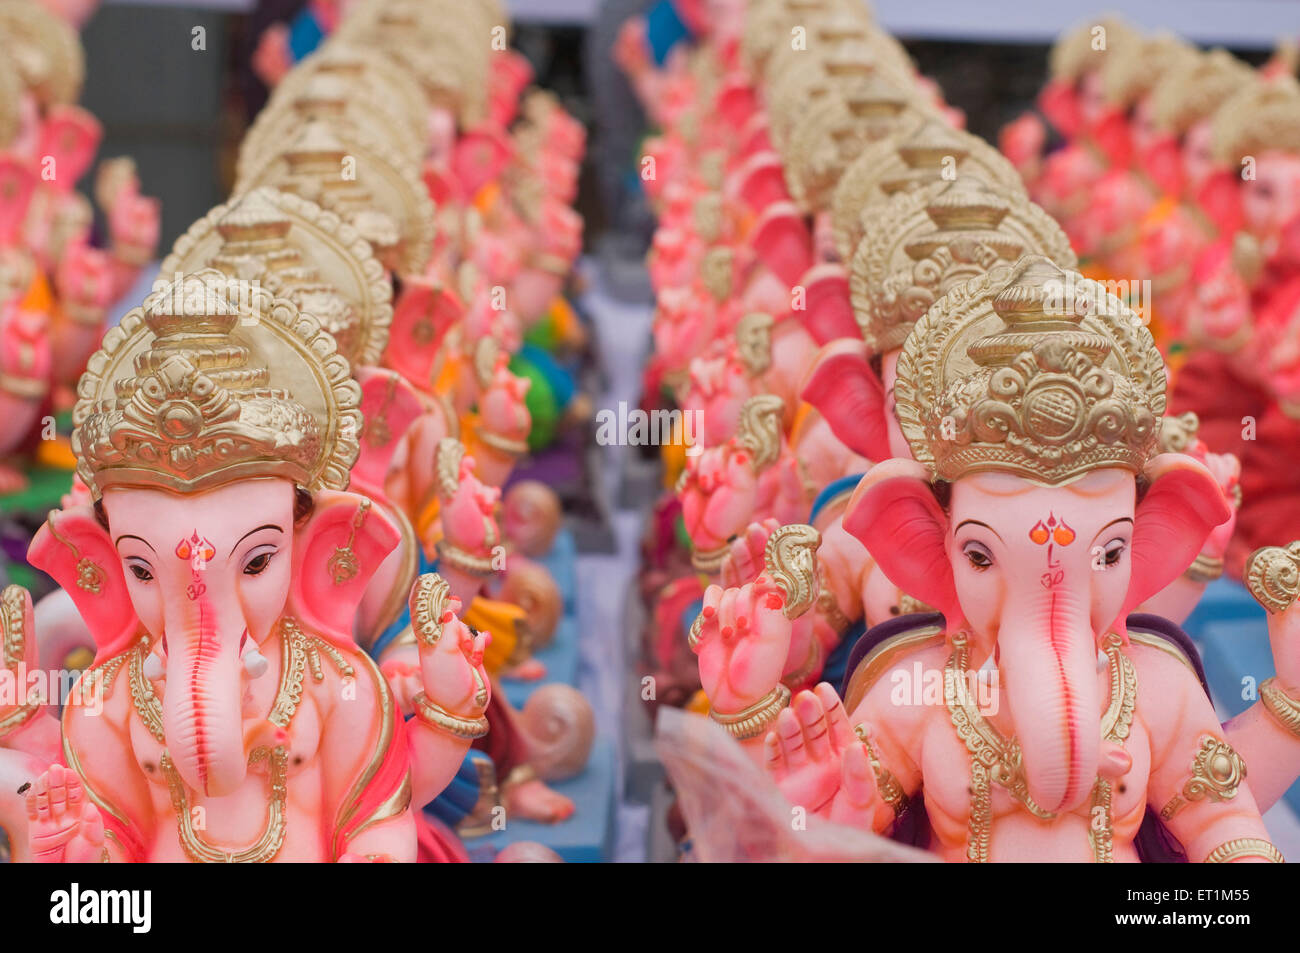 Mehrere kleine Idole von Lord Ganesha Linie zum Verkauf Pune Maharashtra Indien Asien Stockfoto